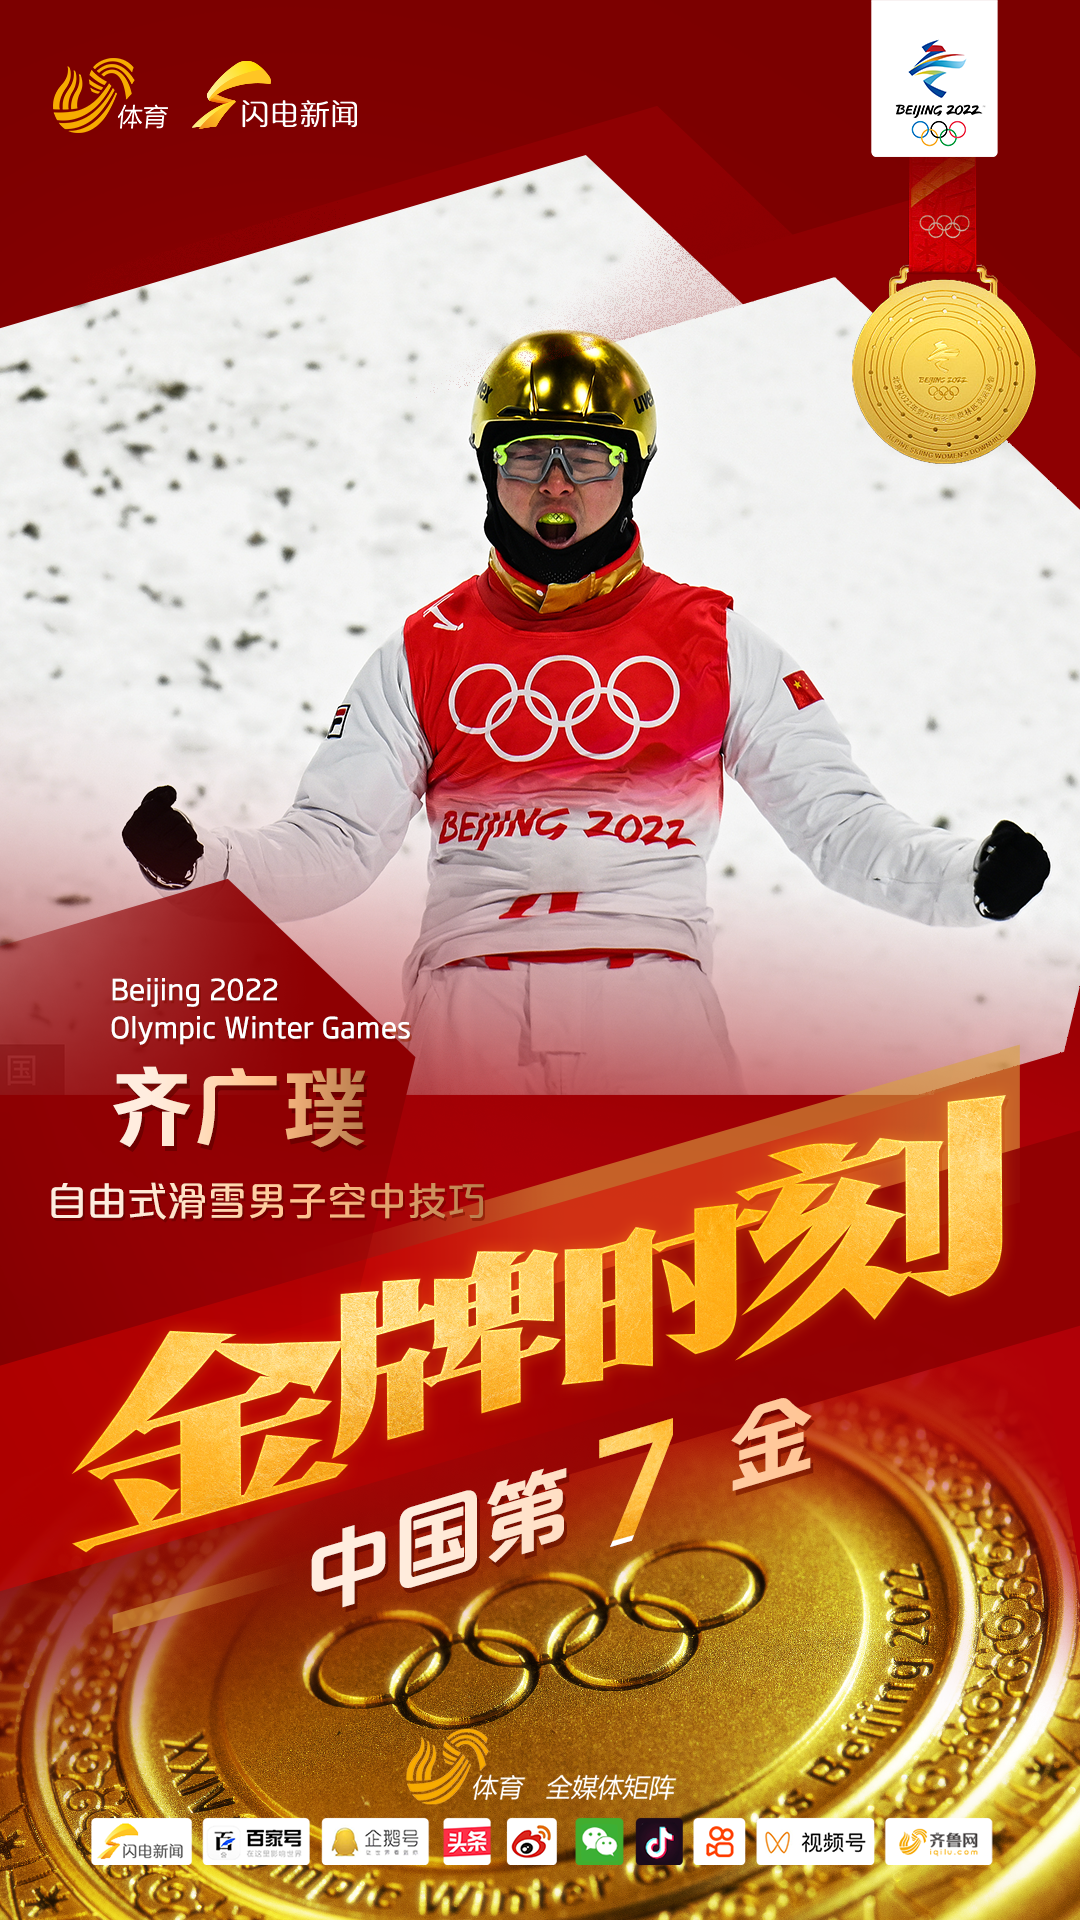 中国第7金！齐广璞斩获自由式滑雪男子空中技巧金牌